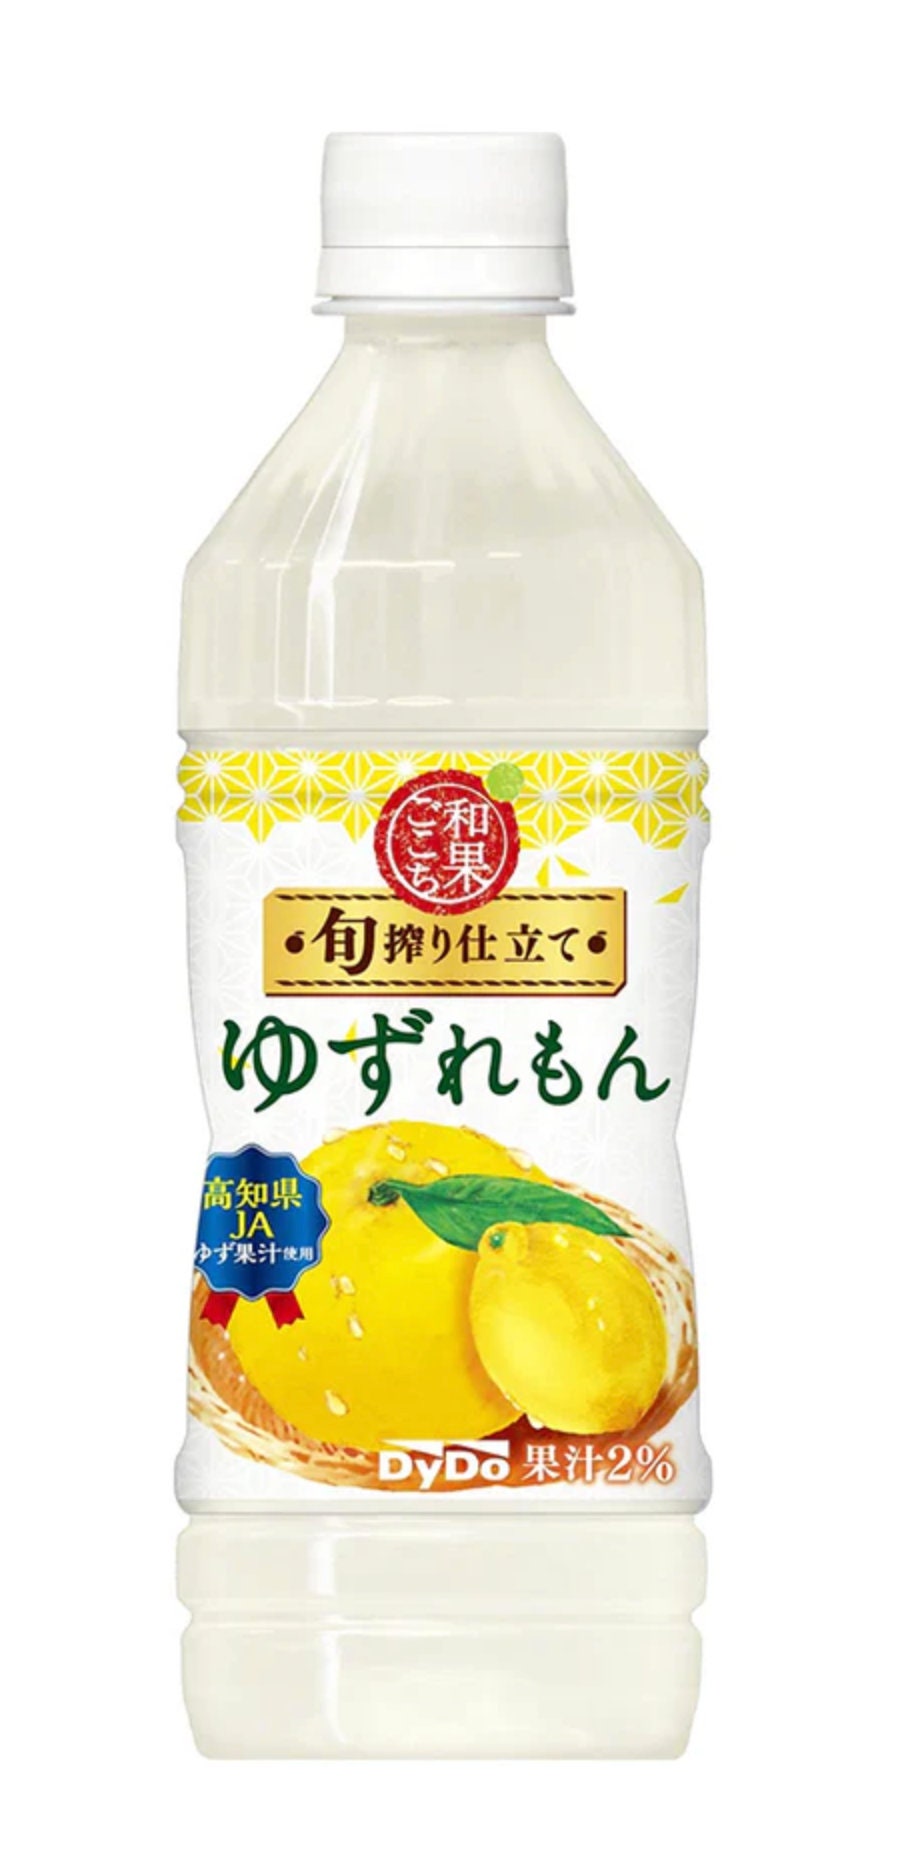 Jus de citron jaune & yuzu - Le jus de citron : le goût et la qualité